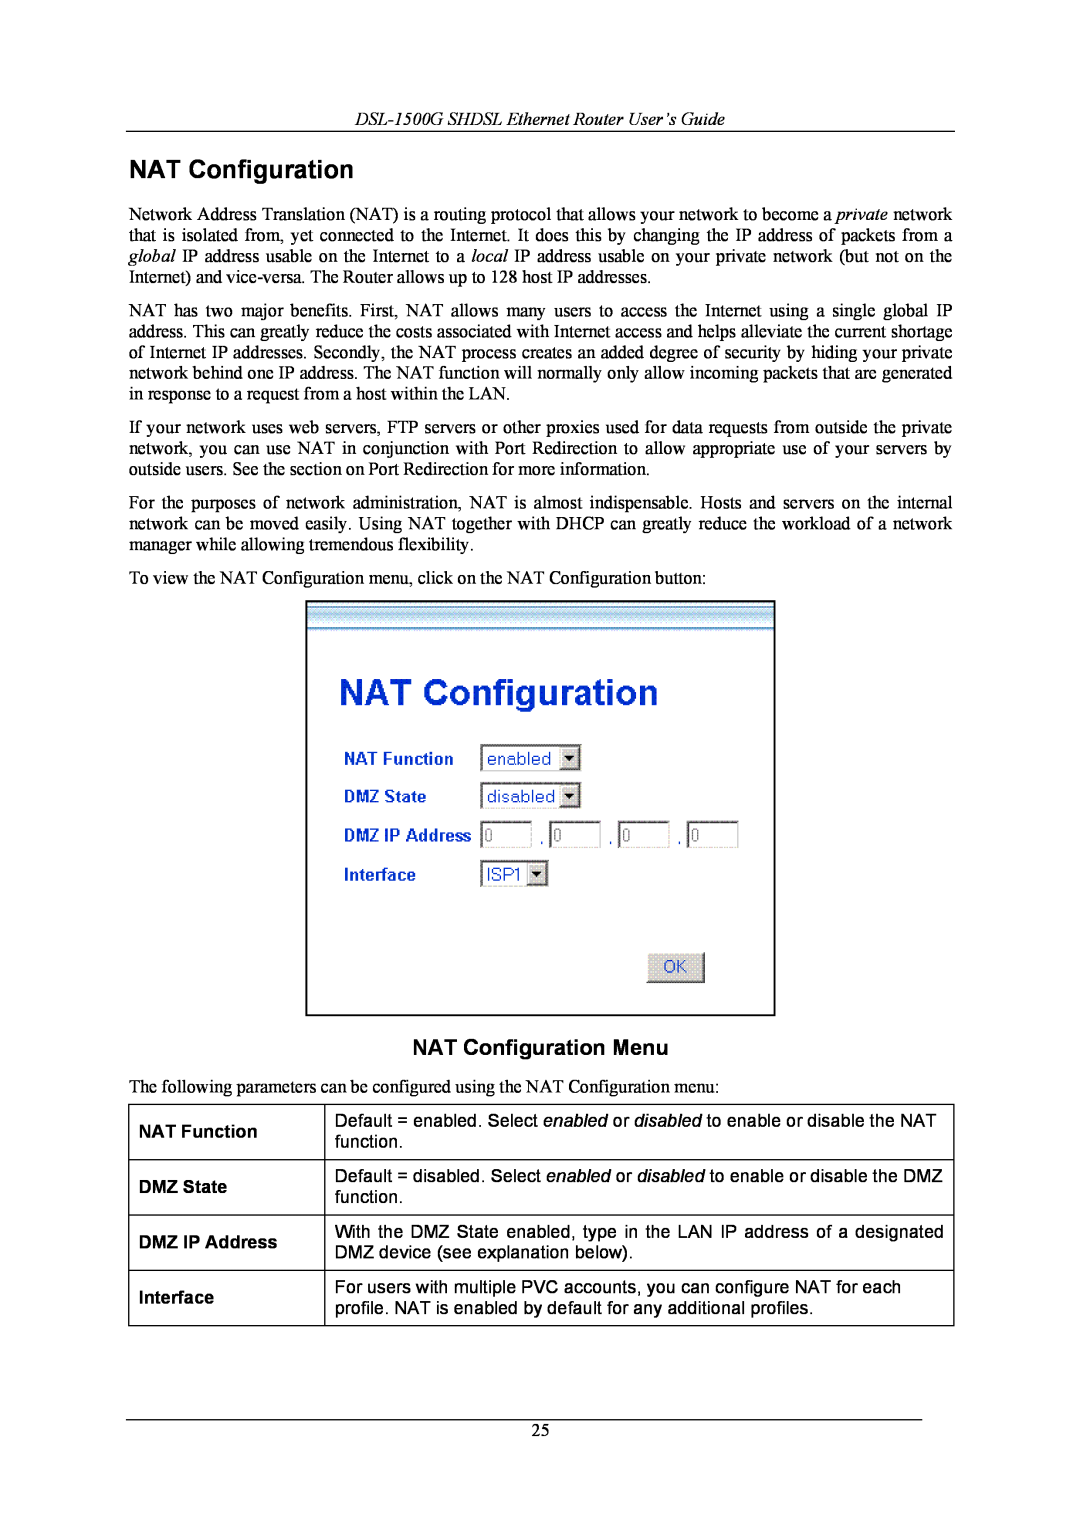 D-Link manual NAT Configuration Menu, DSL-1500G SHDSL Ethernet Router User’s Guide 